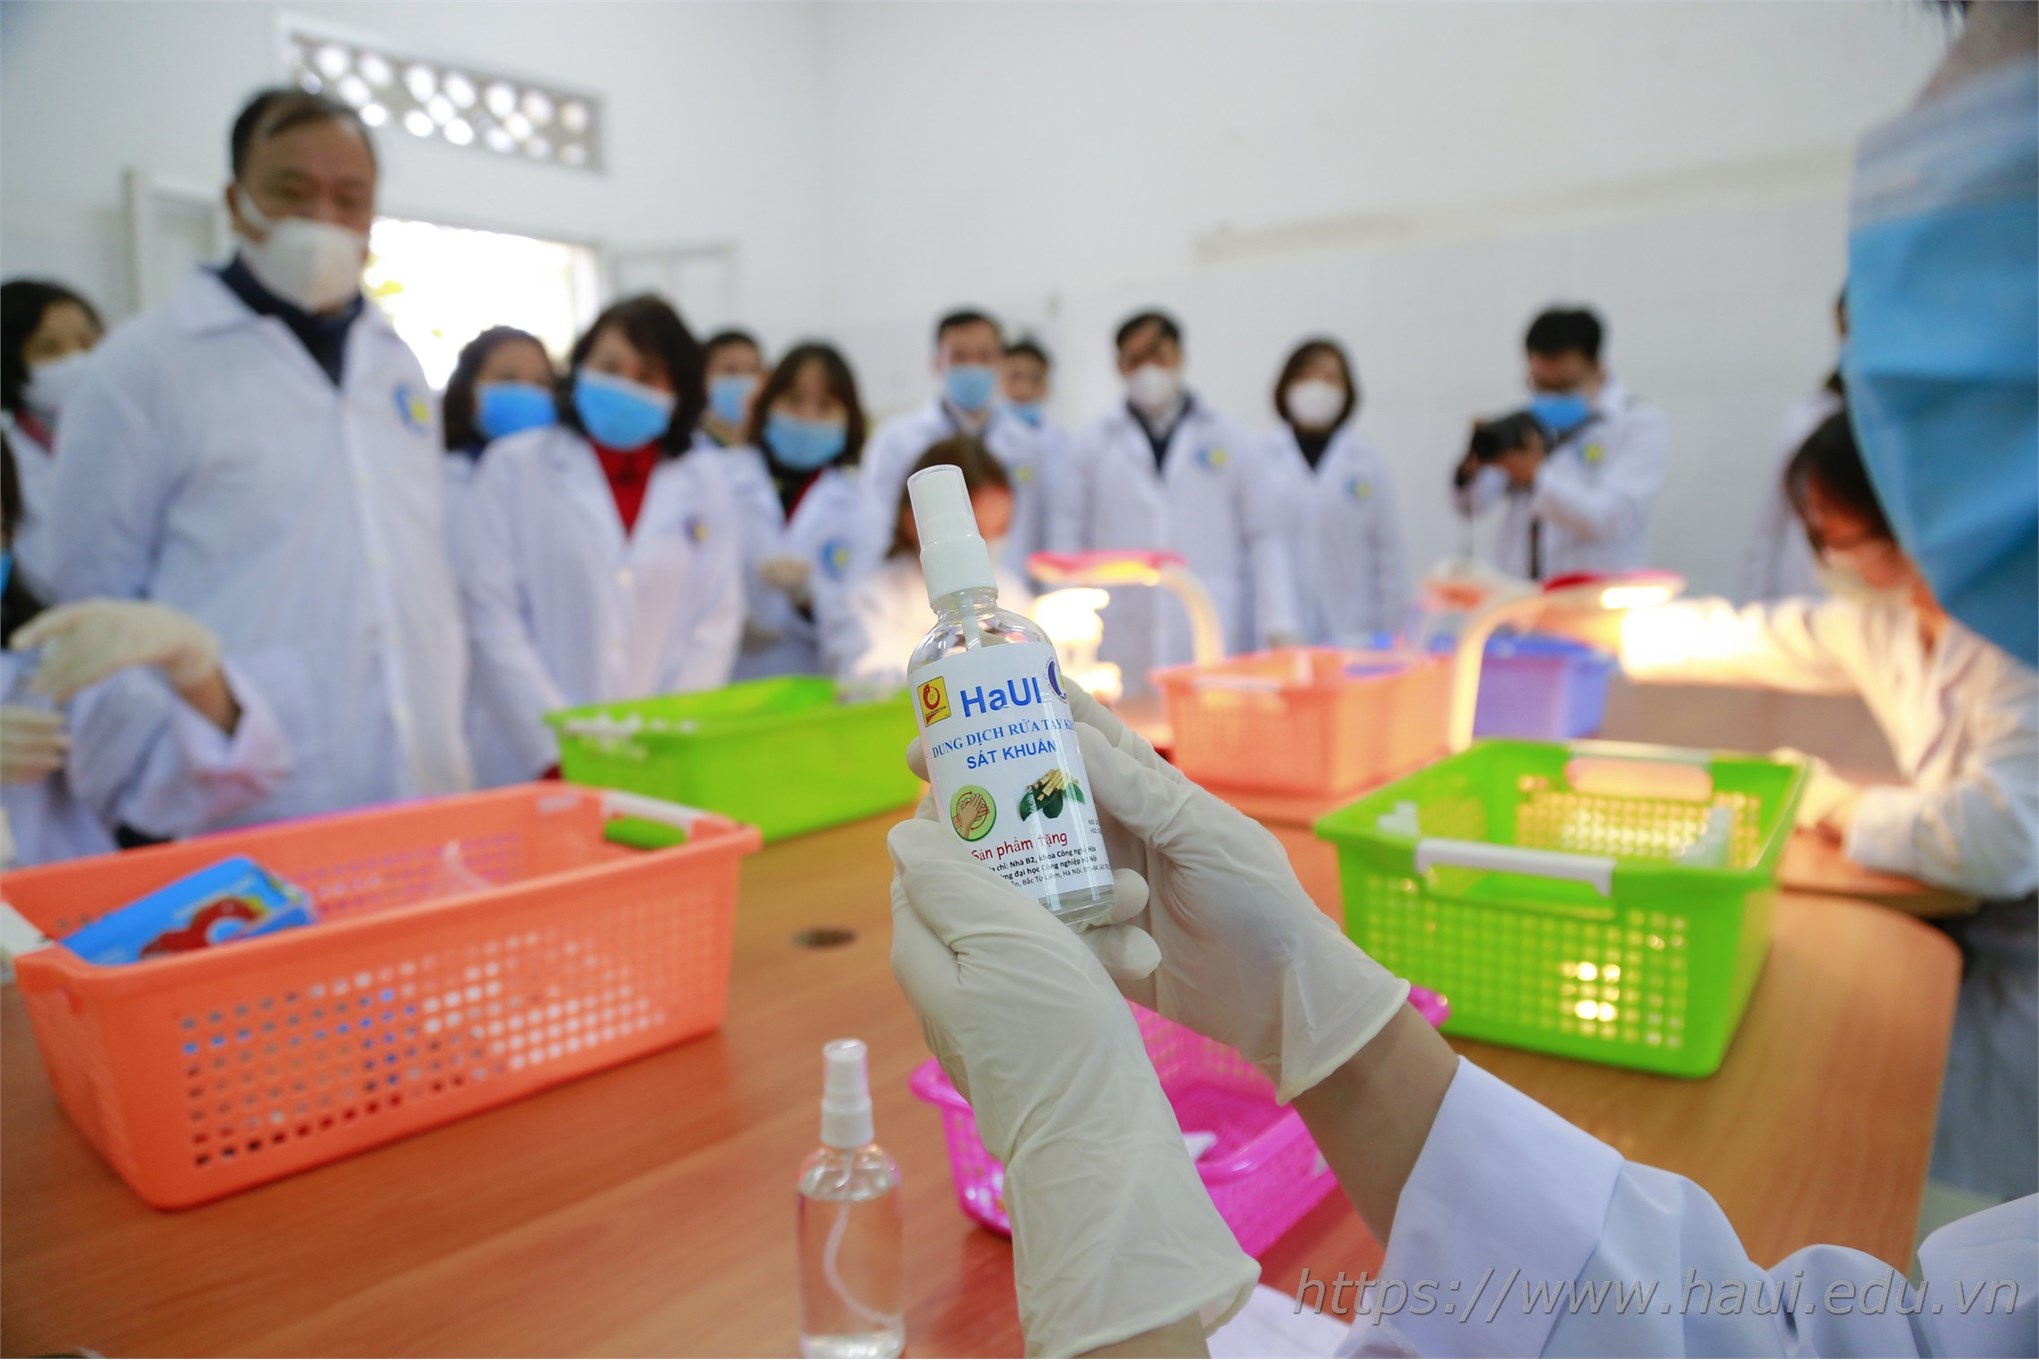 Chung tay vì sức khỏe cộng đồng: Khoa Công nghệ hóa sản xuất dung dịch rửa tay khô phát miễn phí cho cán bộ, giảng viên, sinh viên Nhà trường